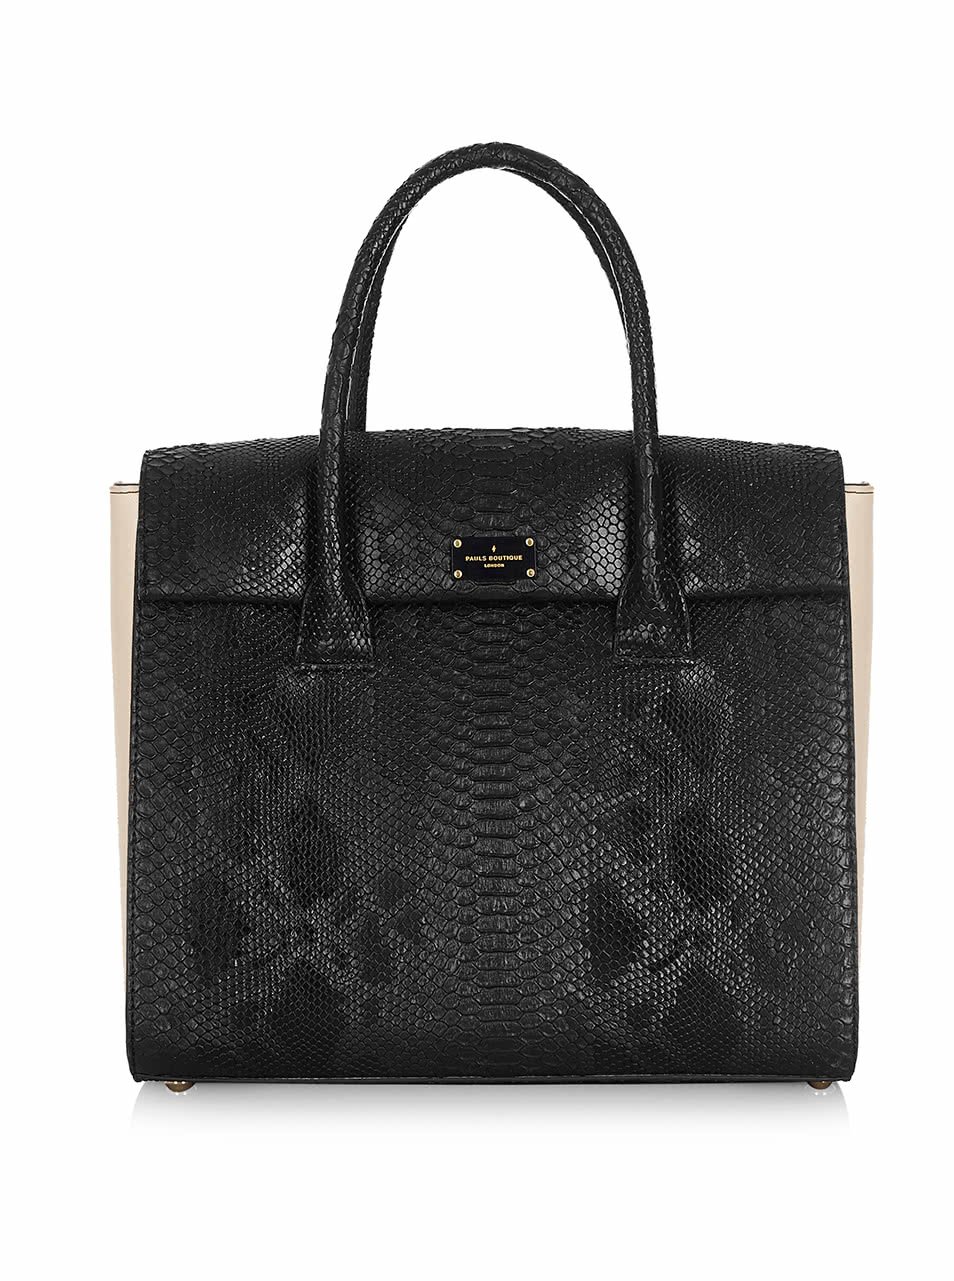 Černá kabelka se vzorem hadí kůže Paul's Boutique Adele